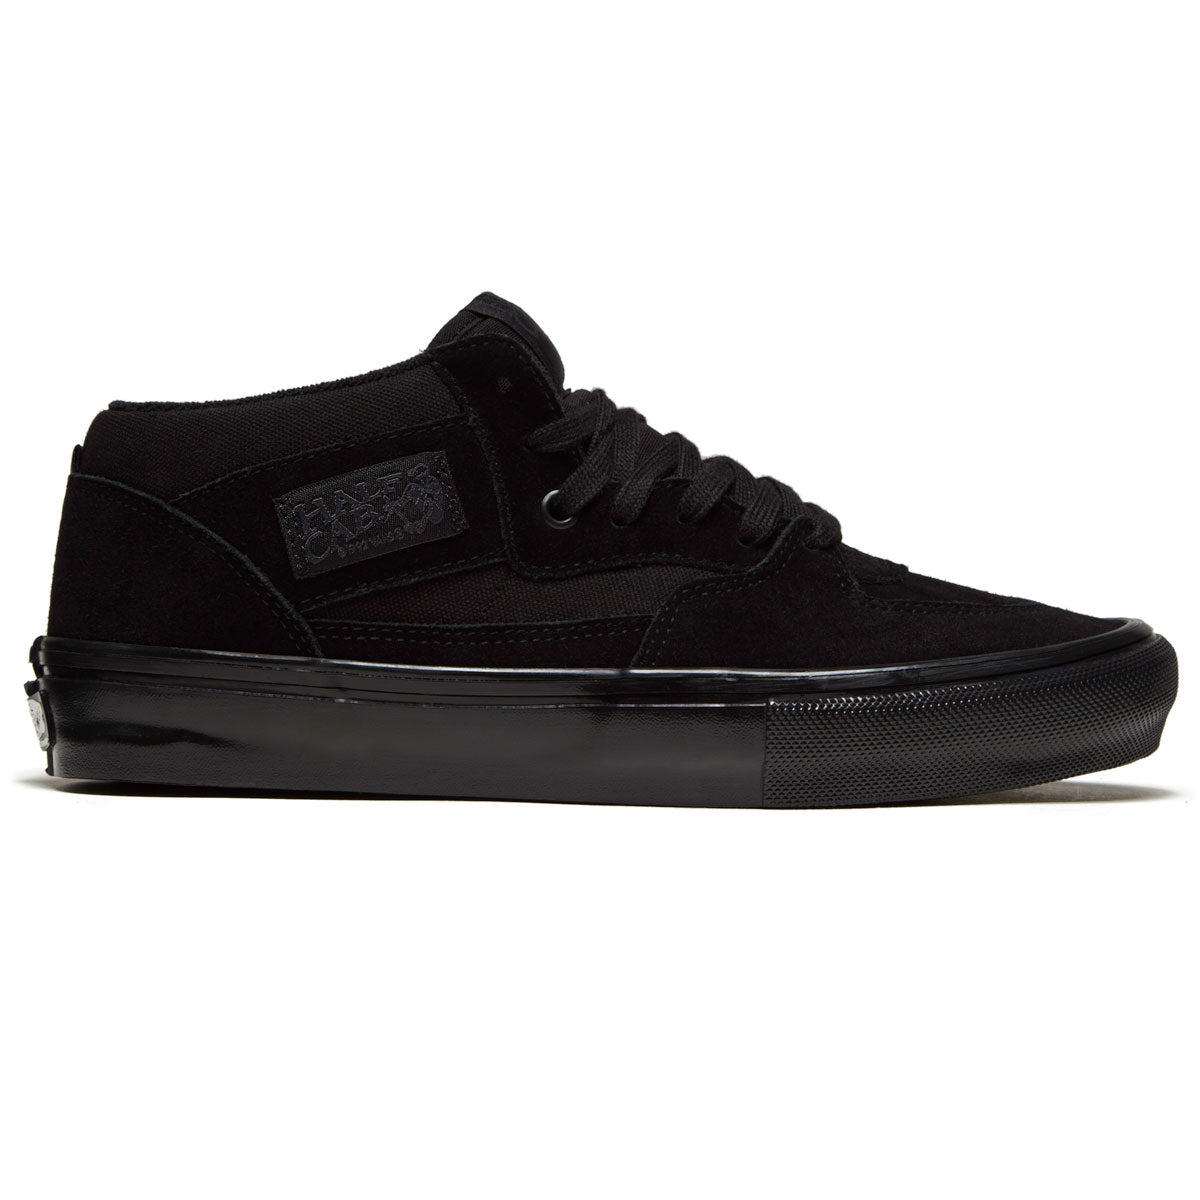 Vans Skate Half Cab Shoes - Black/Black image 1